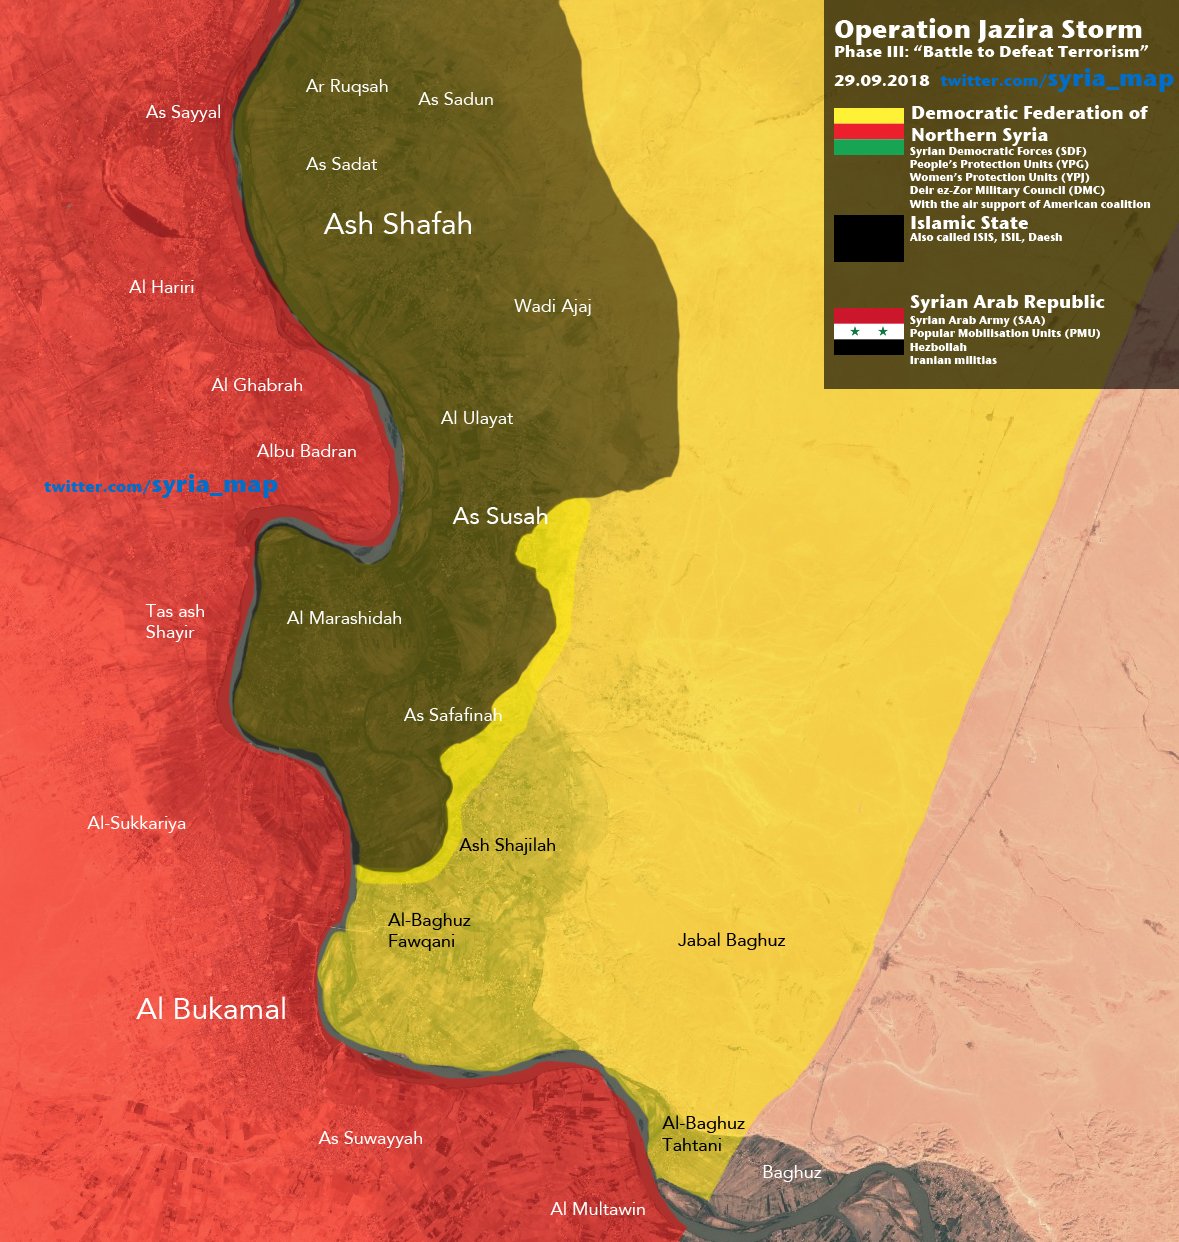 Aktuální vojenská situace v oblasti operace Jazira Storm – jihovýchod Sýrie